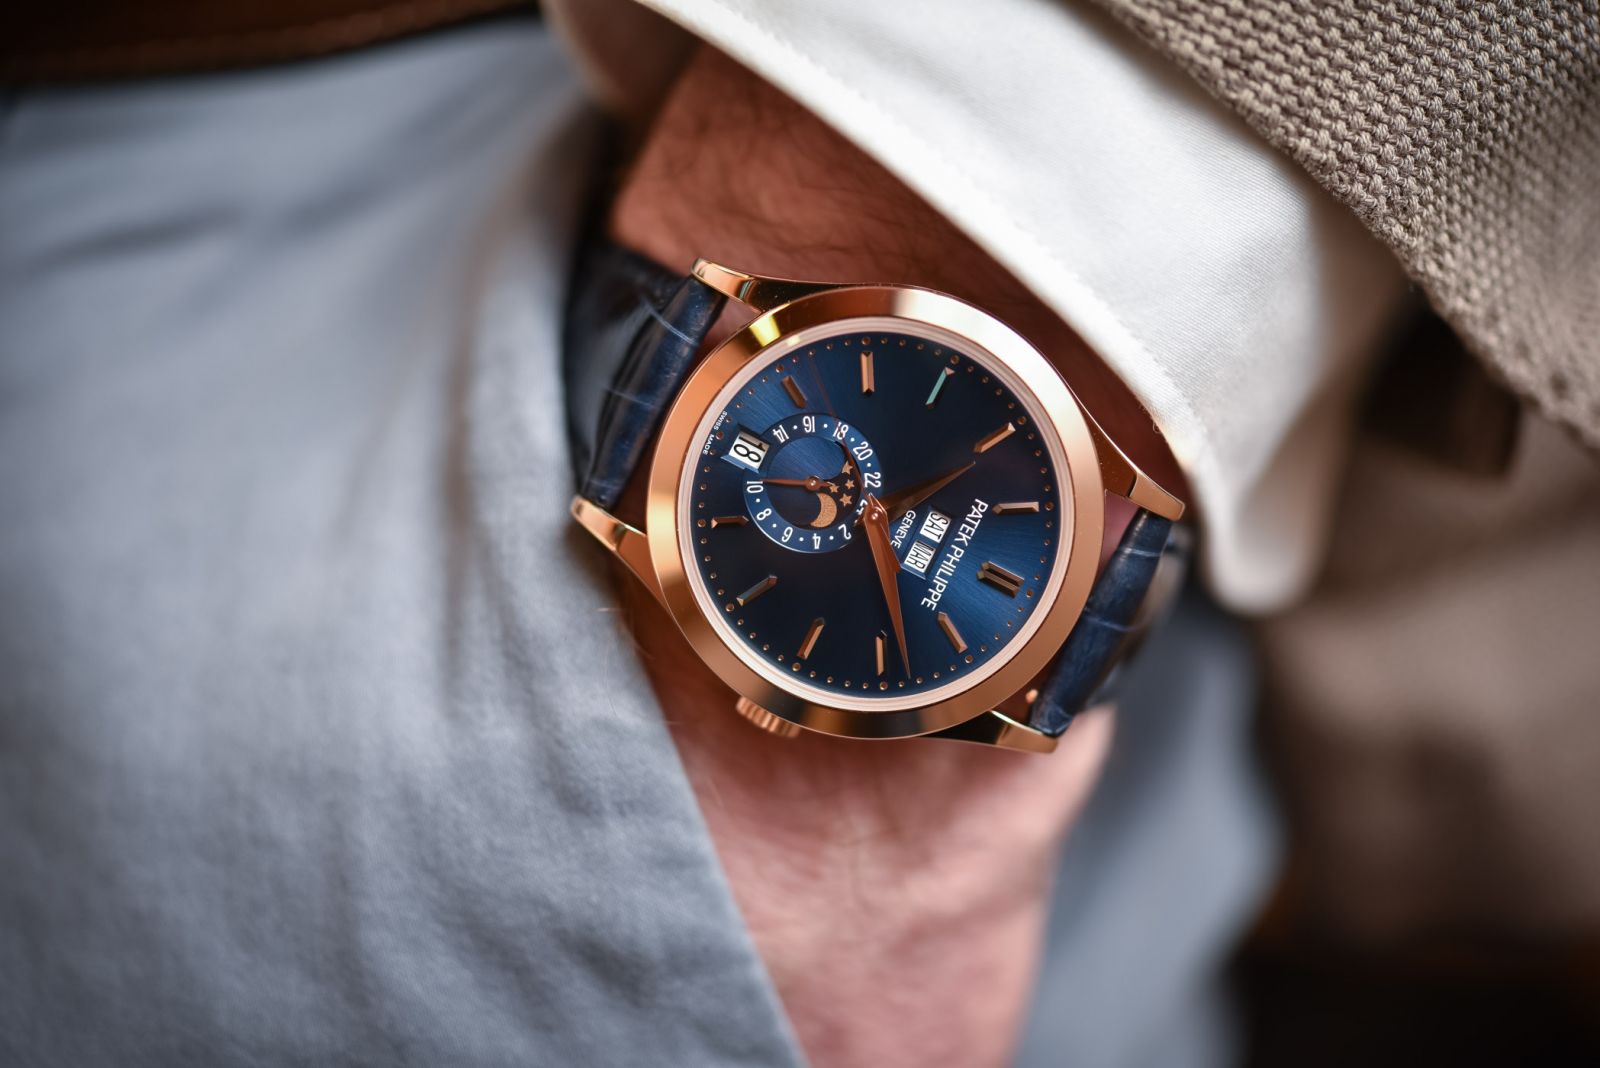 Boss Luxury tư vấn 5 mẫu đồng hồ mặt số màu xanh dành cho quý ông - Ảnh 2.